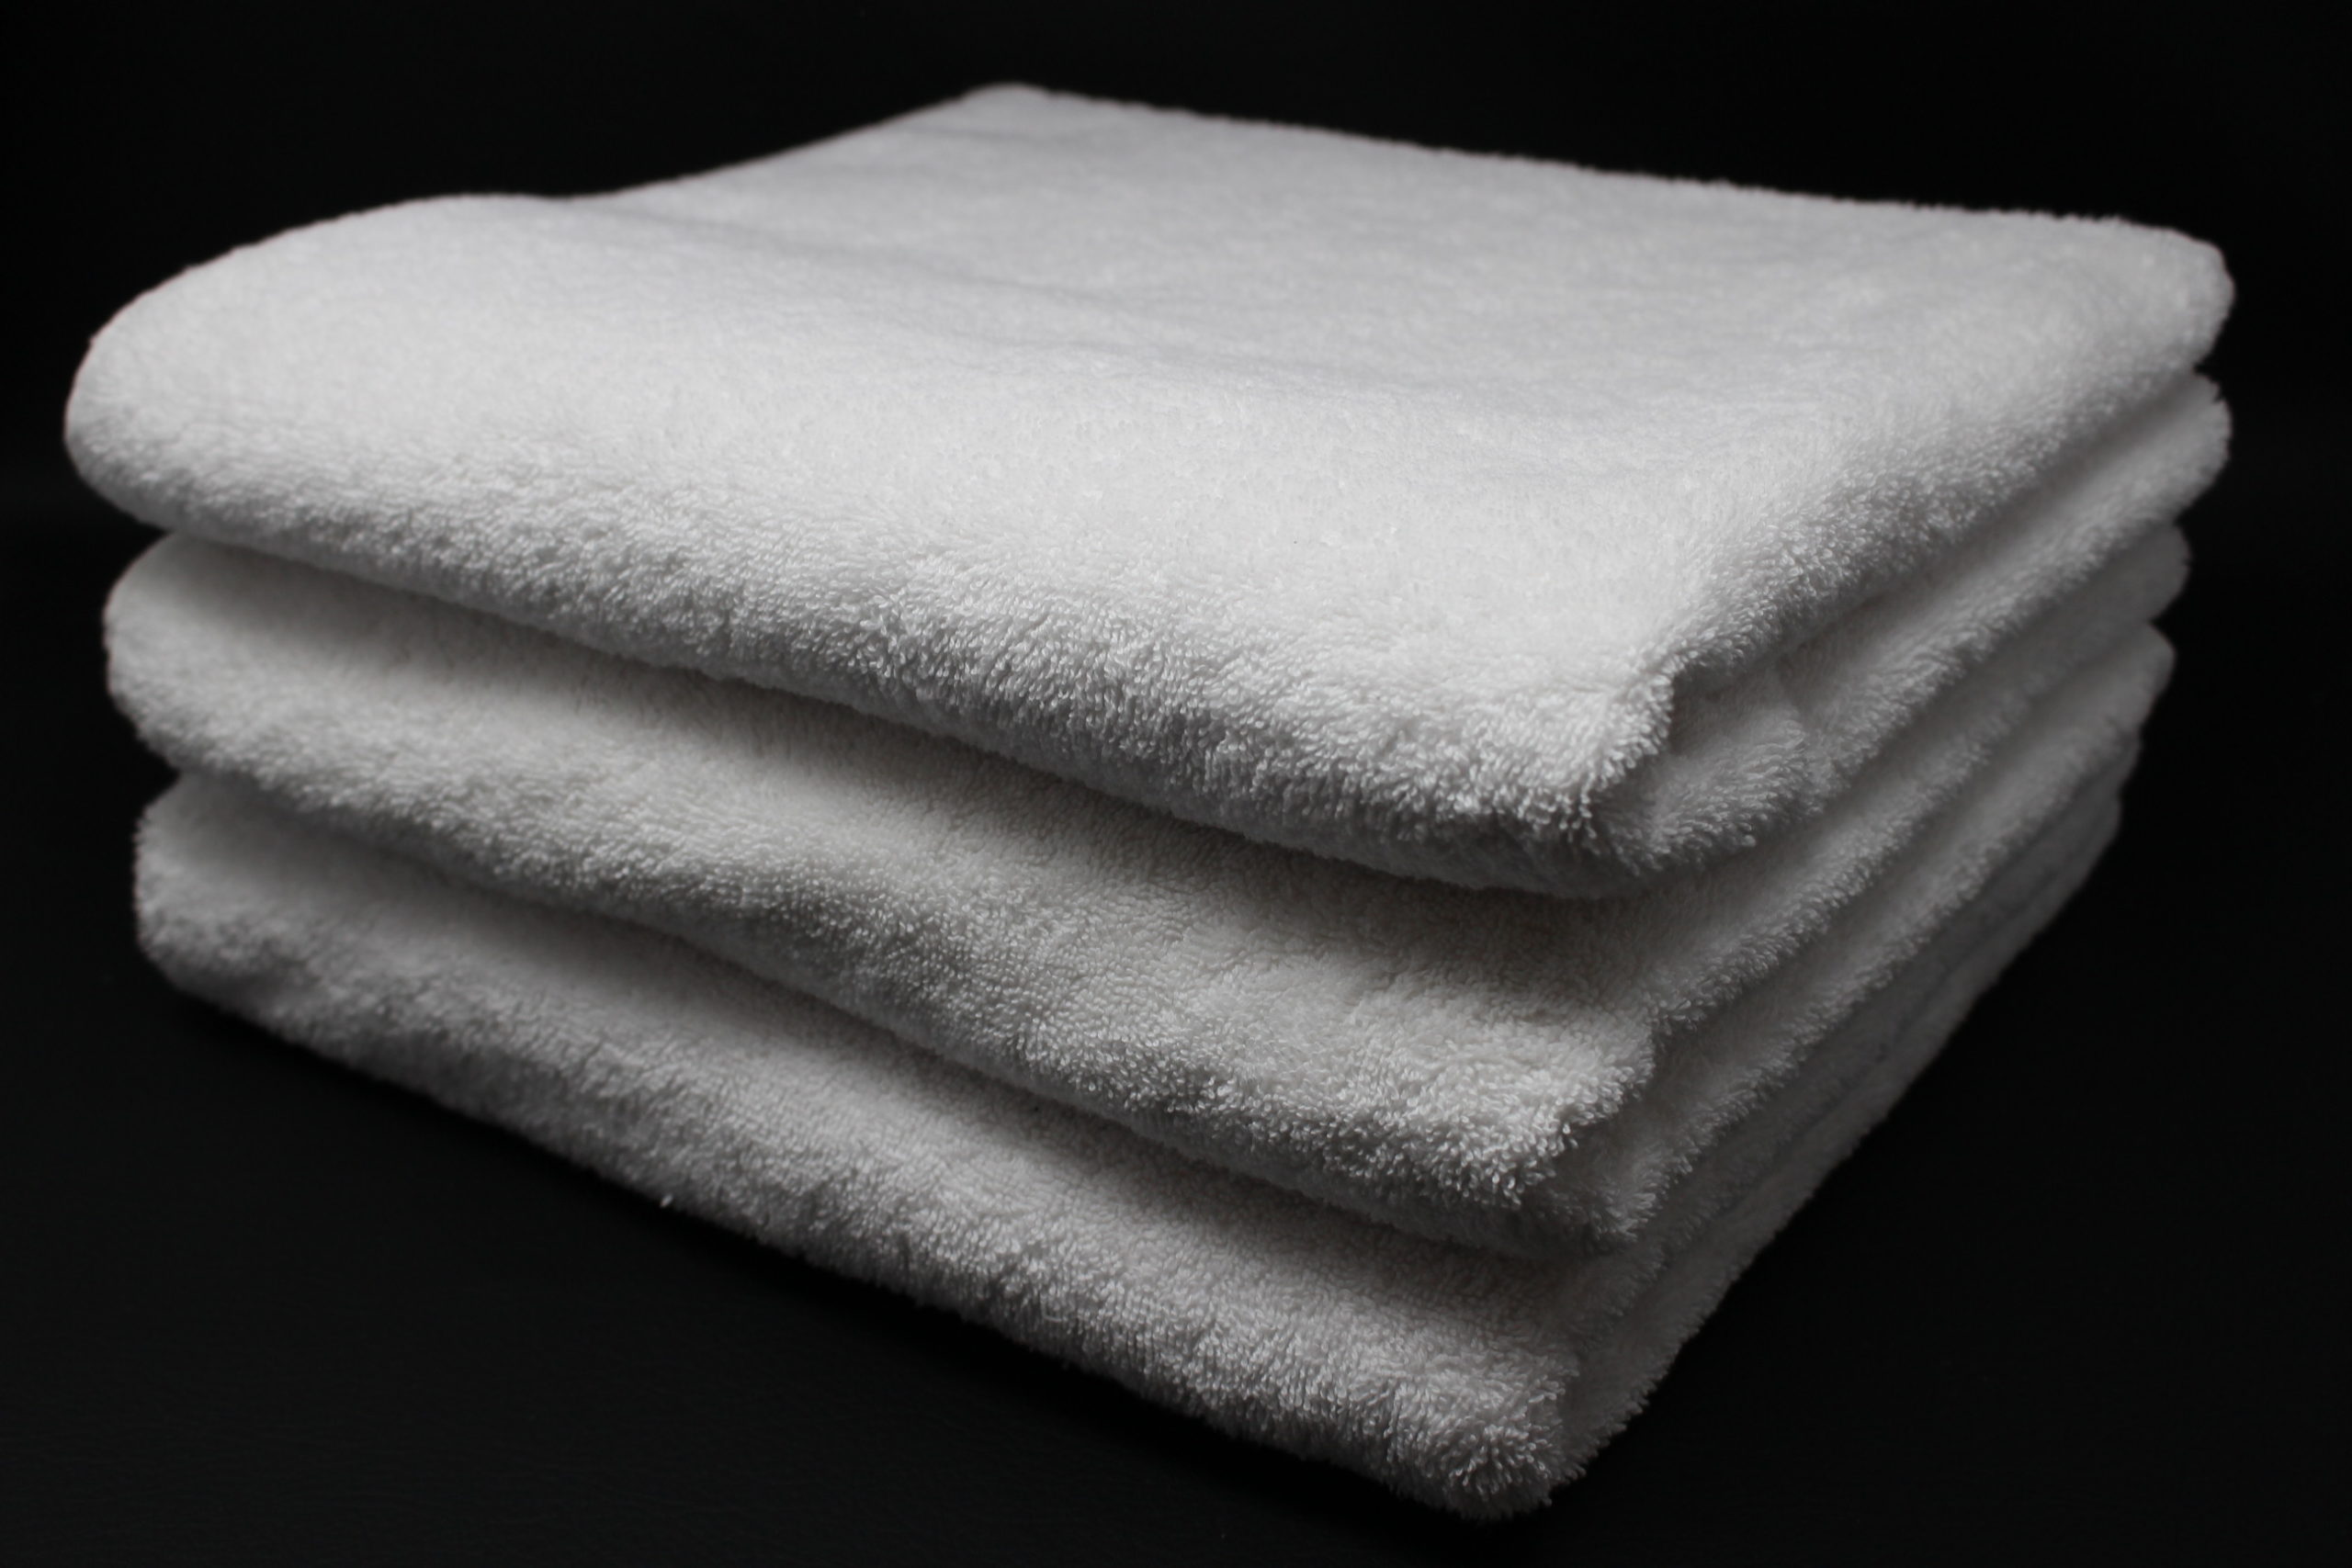 Ultra Soft Bath Towel 27x54 White 17LB